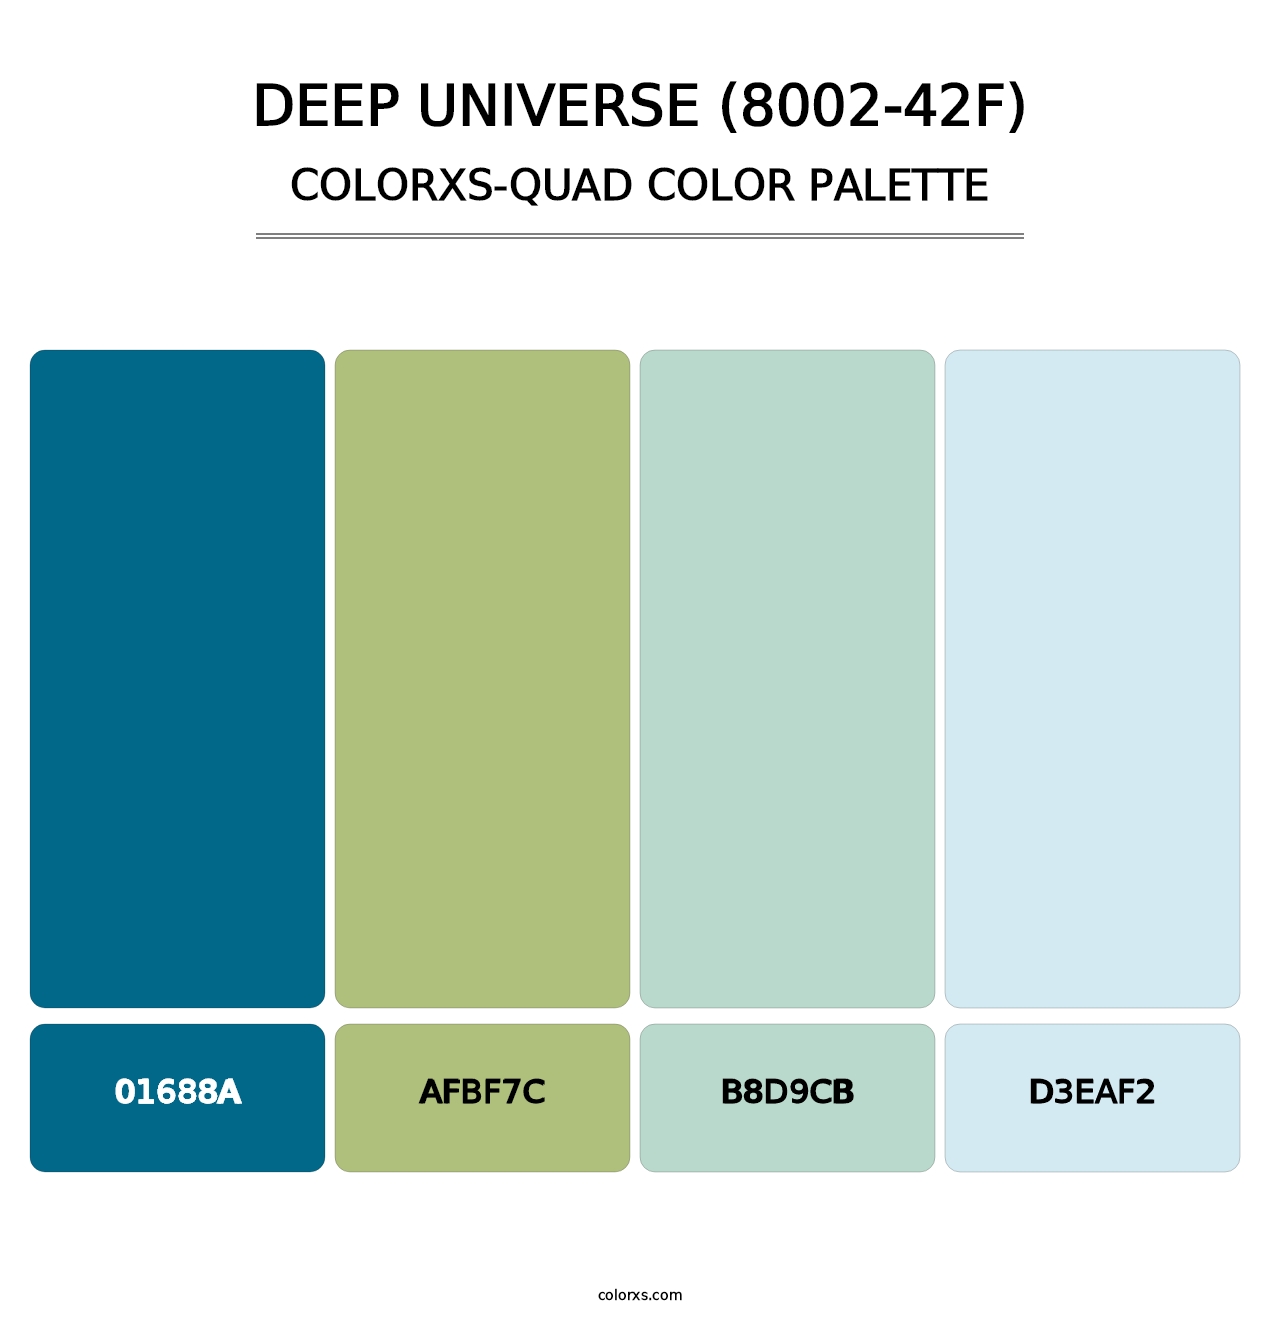 Deep Universe (8002-42F) - Colorxs Quad Palette